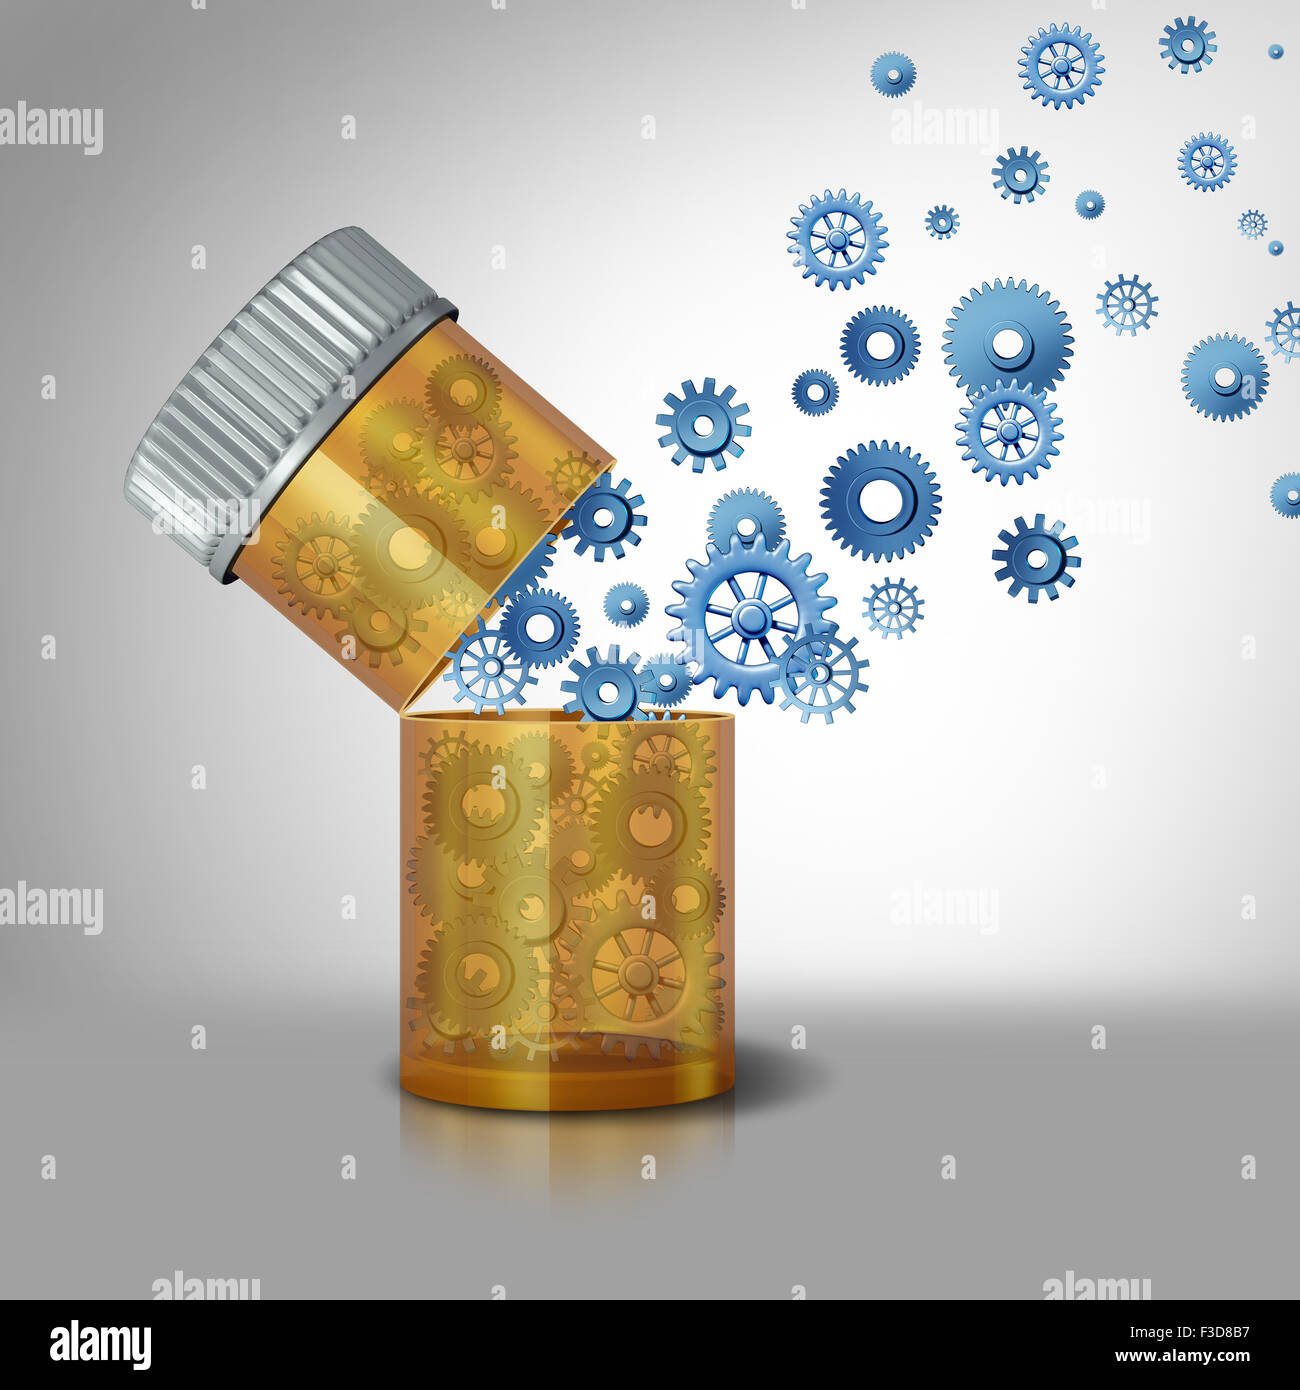 Concept de l'industrie pharmaceutique et les médicaments precription symbole d'affaires comme une bouteille de pilules avec des engrenages et roues à crémaillère qui s'écoule comme une métaphore pour les médicaments et la médecine fonctionnement interne. Banque D'Images